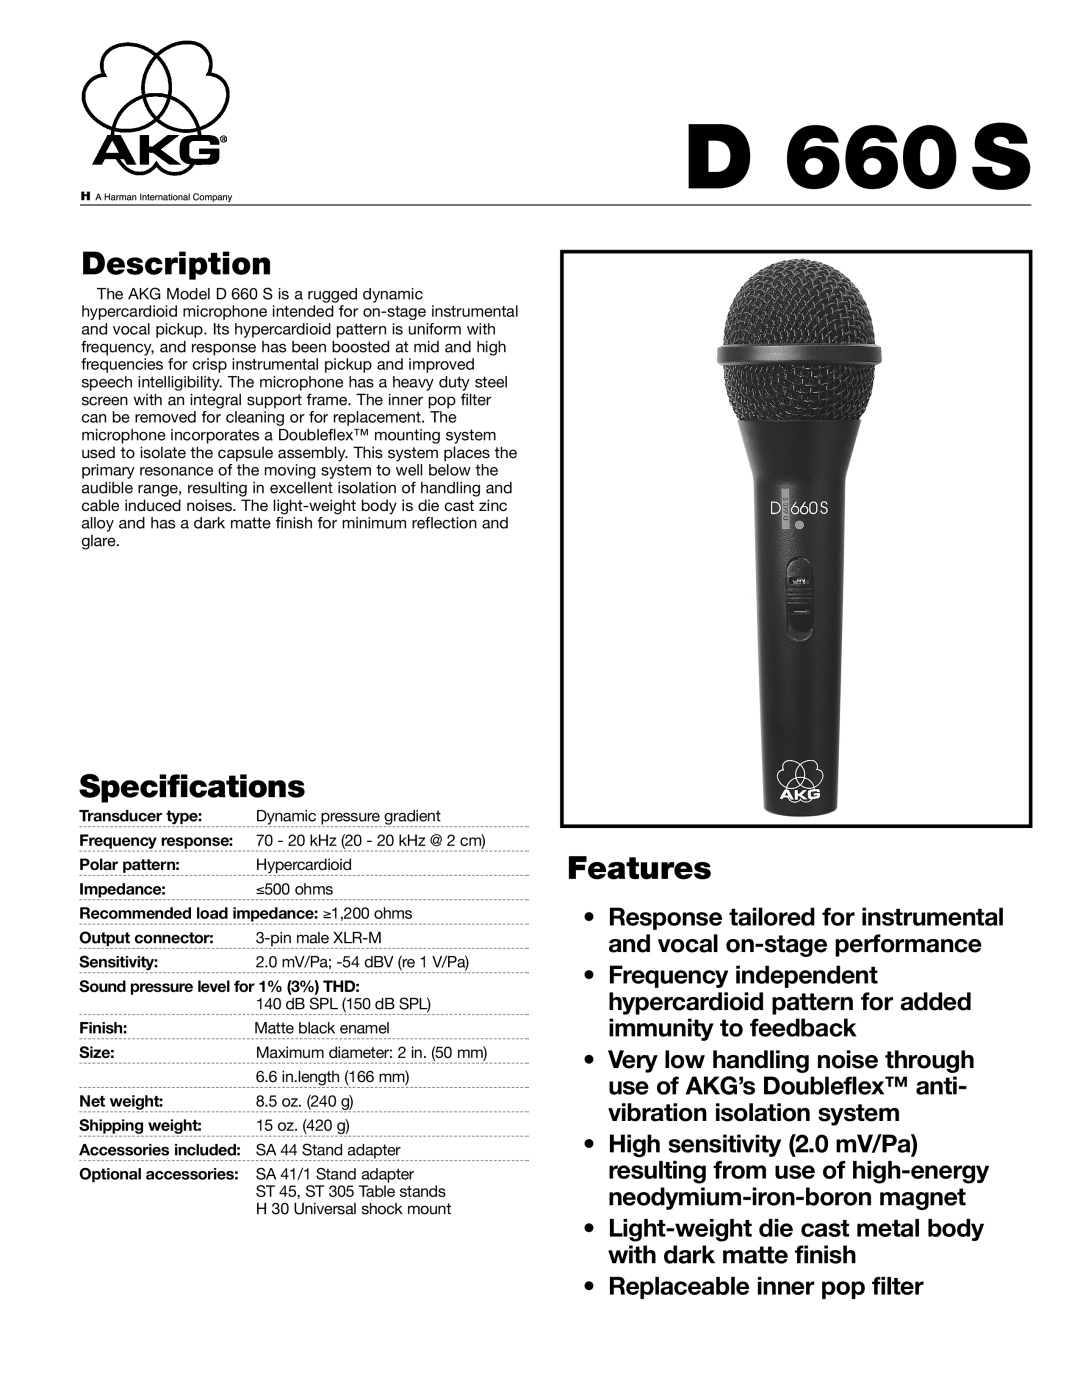 AKG Acoustics D660S specifications Description, Specifications, Features, D 660S 